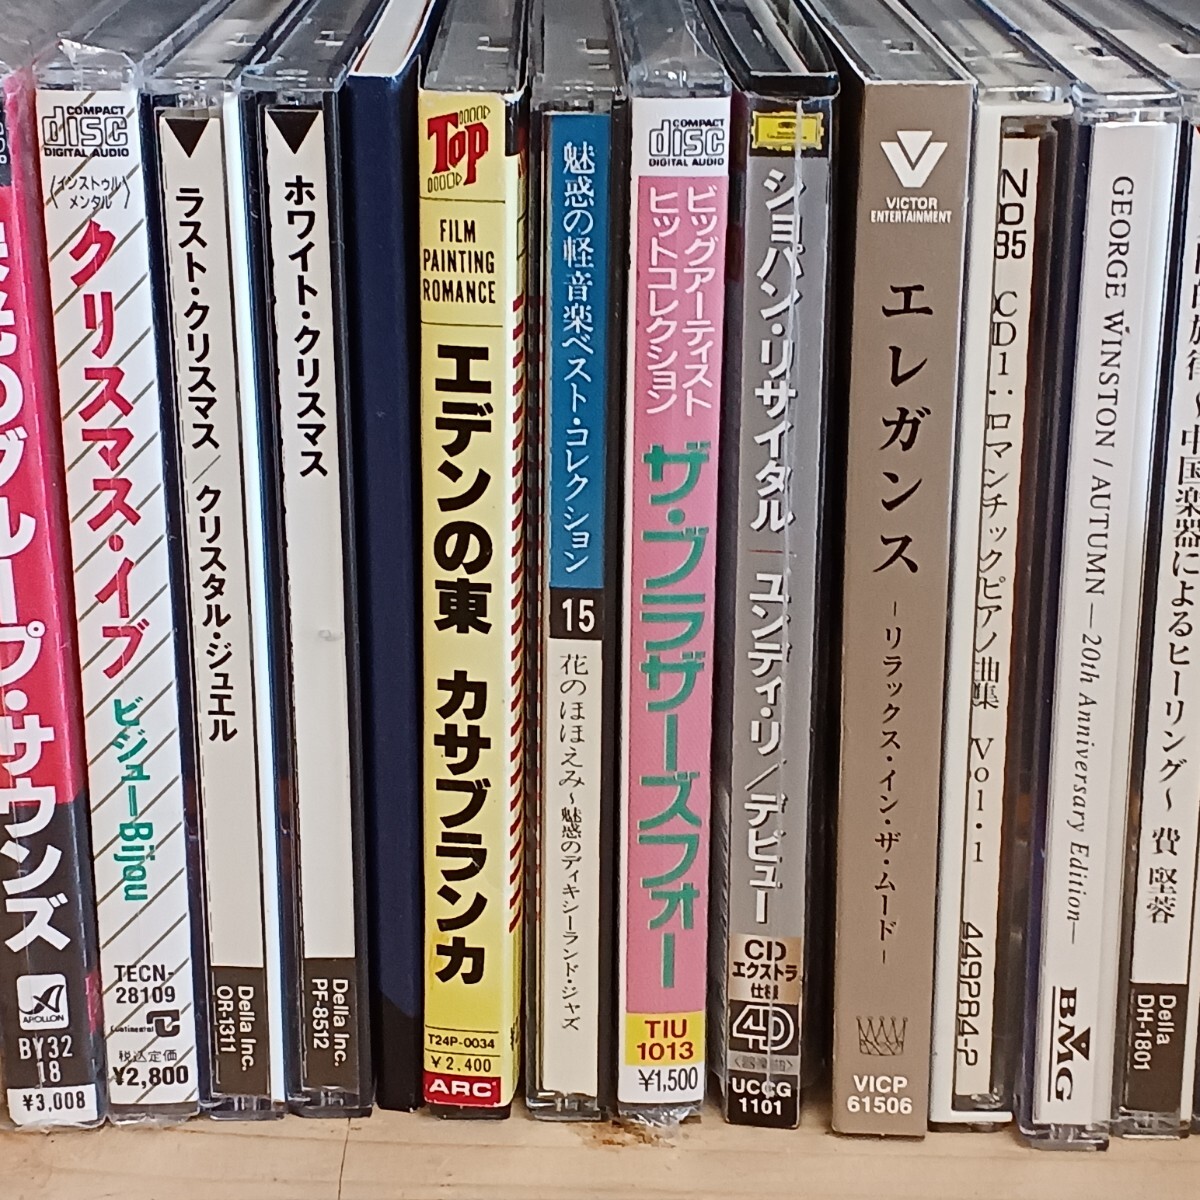 CD совместно Японская музыка, западная музыка жанр различный Sakamoto Ryuichi тутовик рисовое поле .. Matsuda Seiko прекрасный пустой ... др. все 57 название (8cmCD8 название ) не проверено текущее состояние товар 